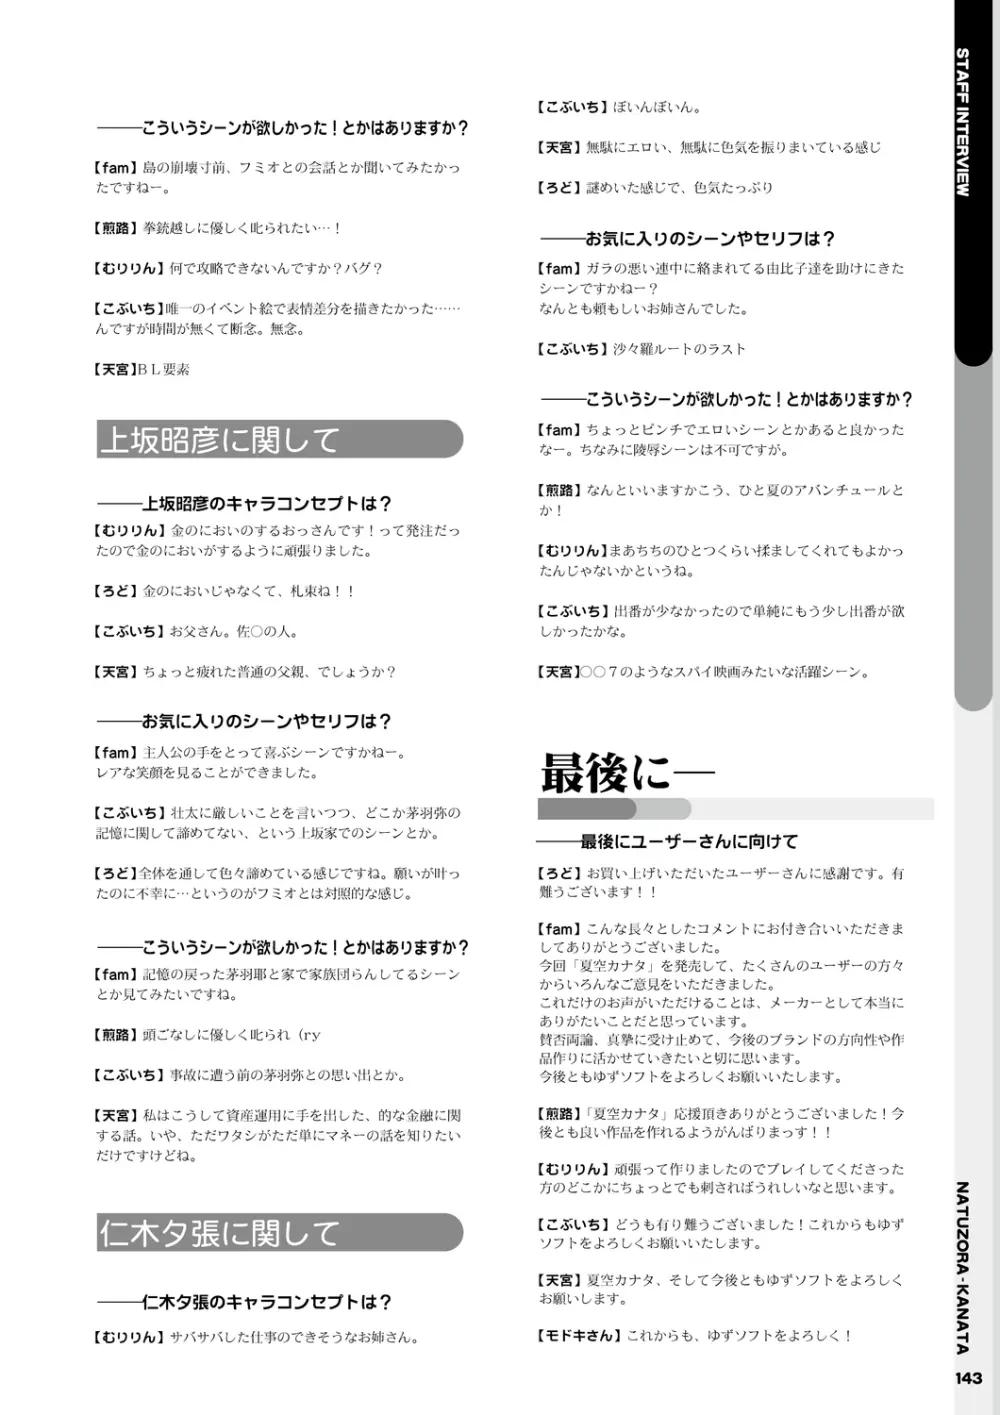 夏空カナタ オフィシャル・ビジュアルファンブック 145ページ